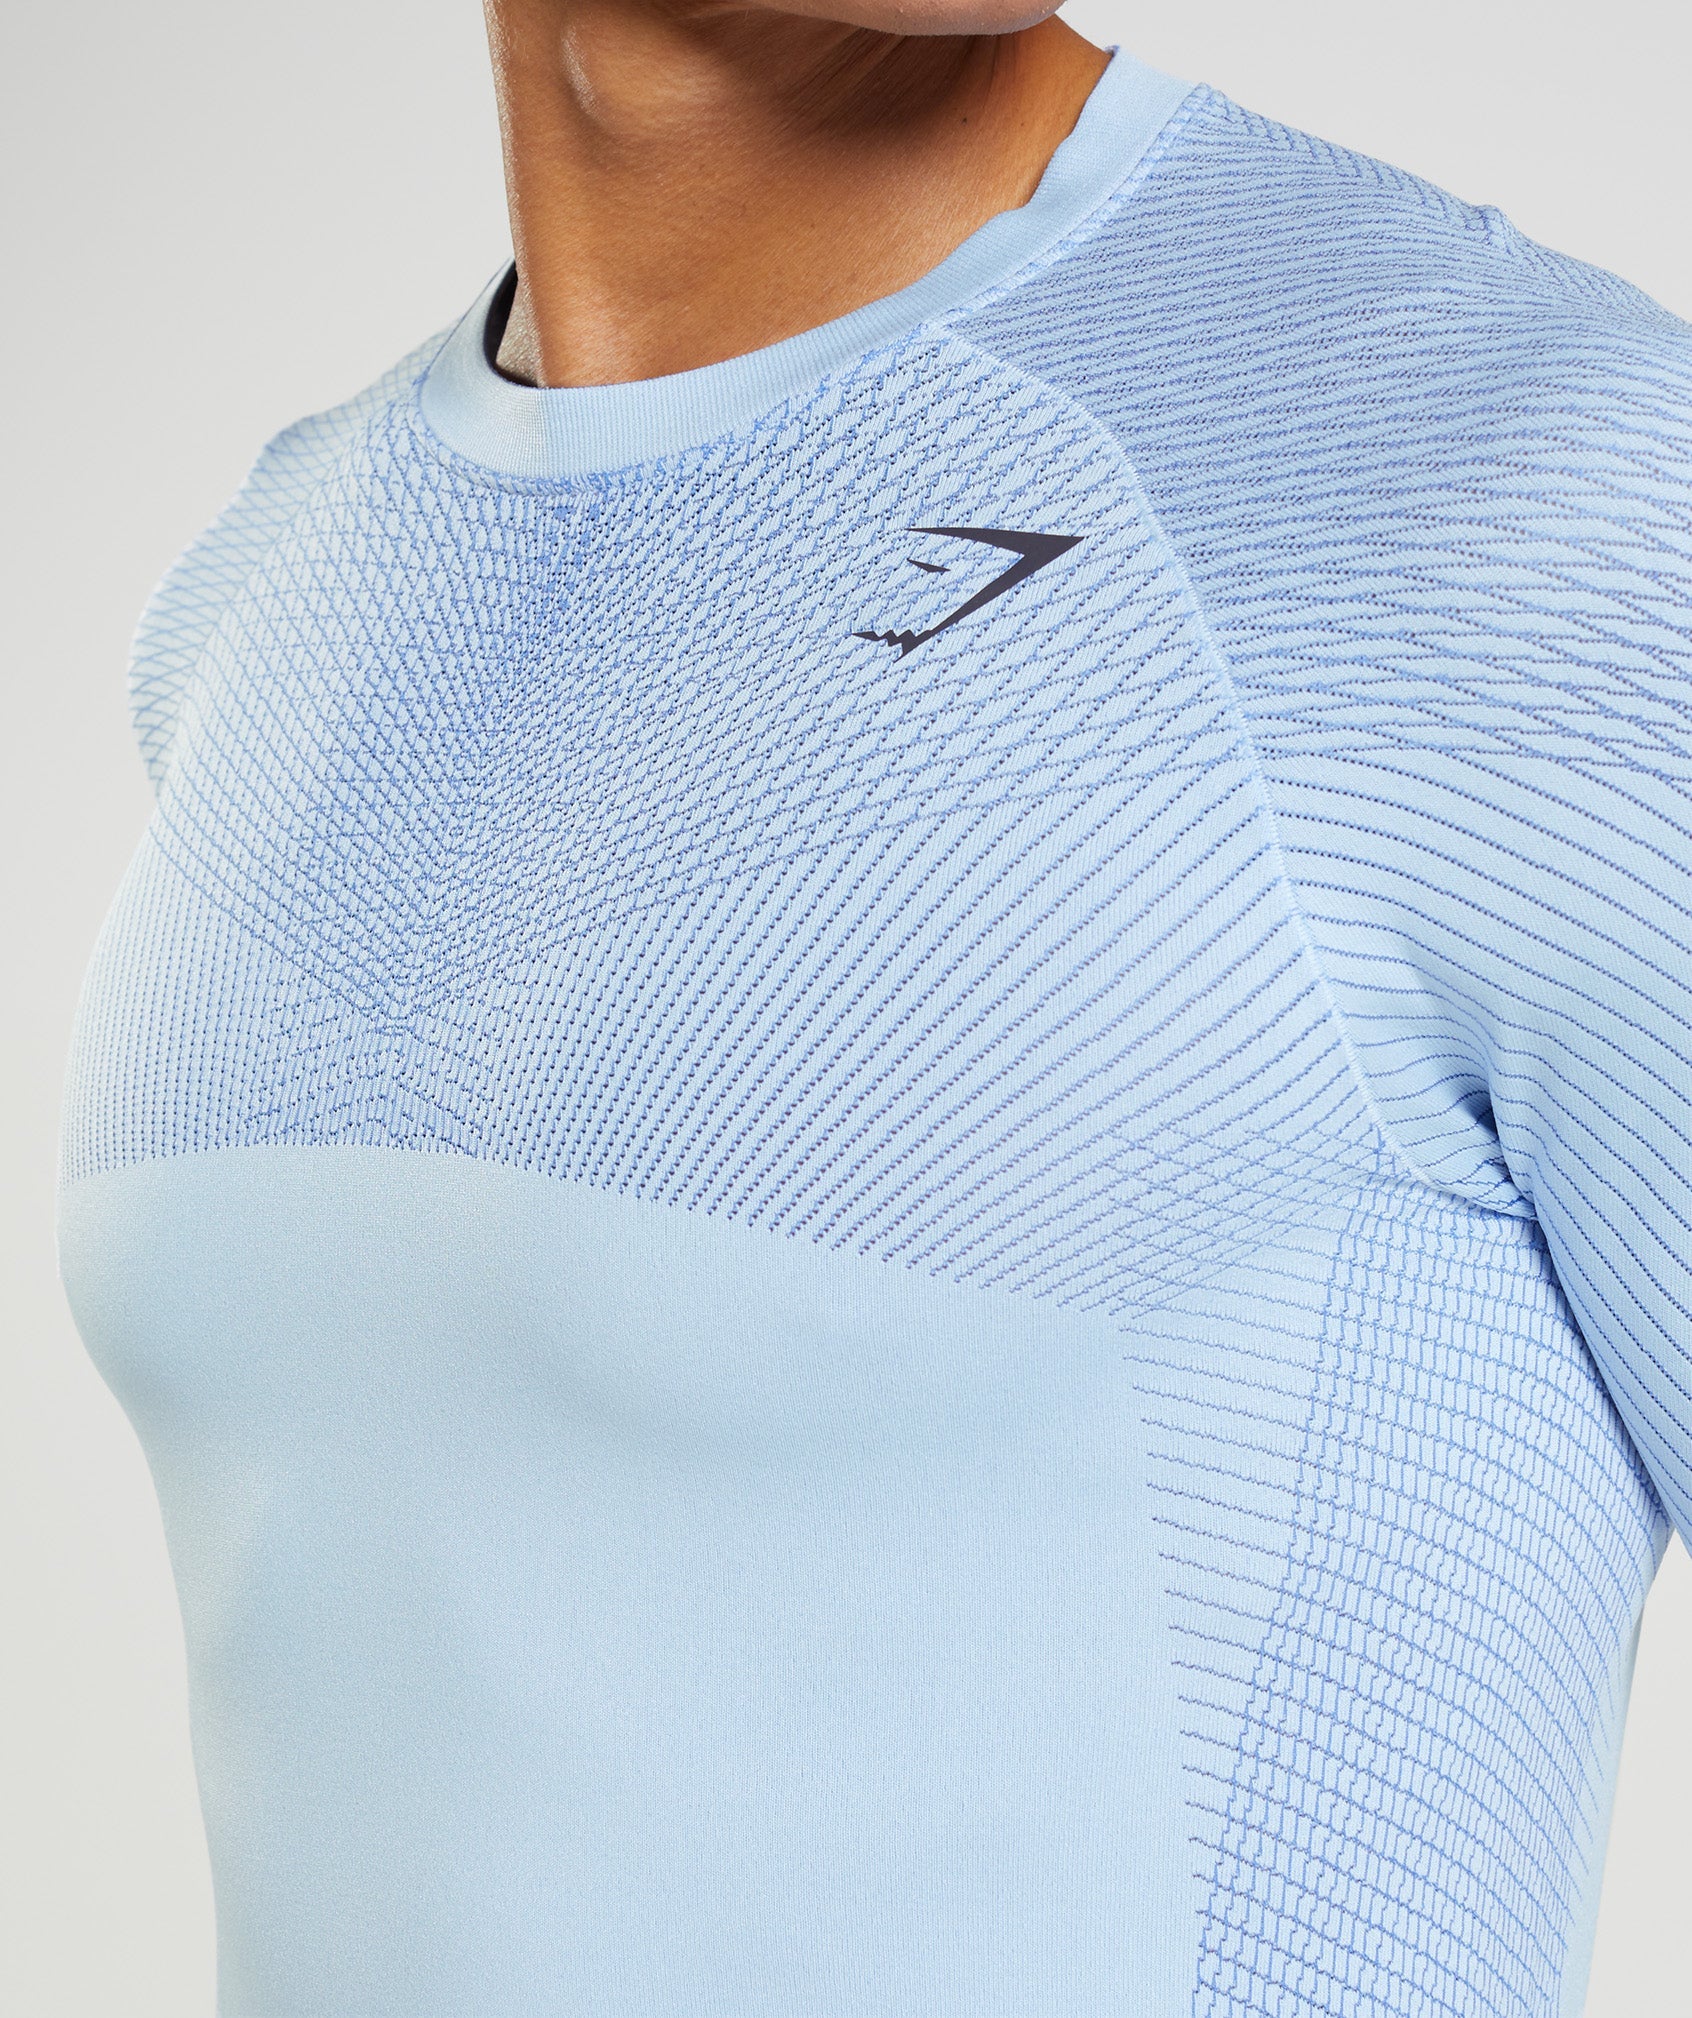 Apex Seamless Long Sleeve T-Shirt in Linen Blue/Court Blue - view 6